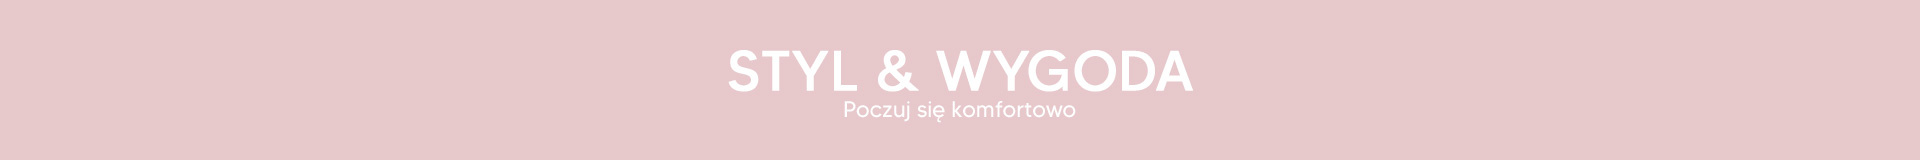 STYL & WYGODA